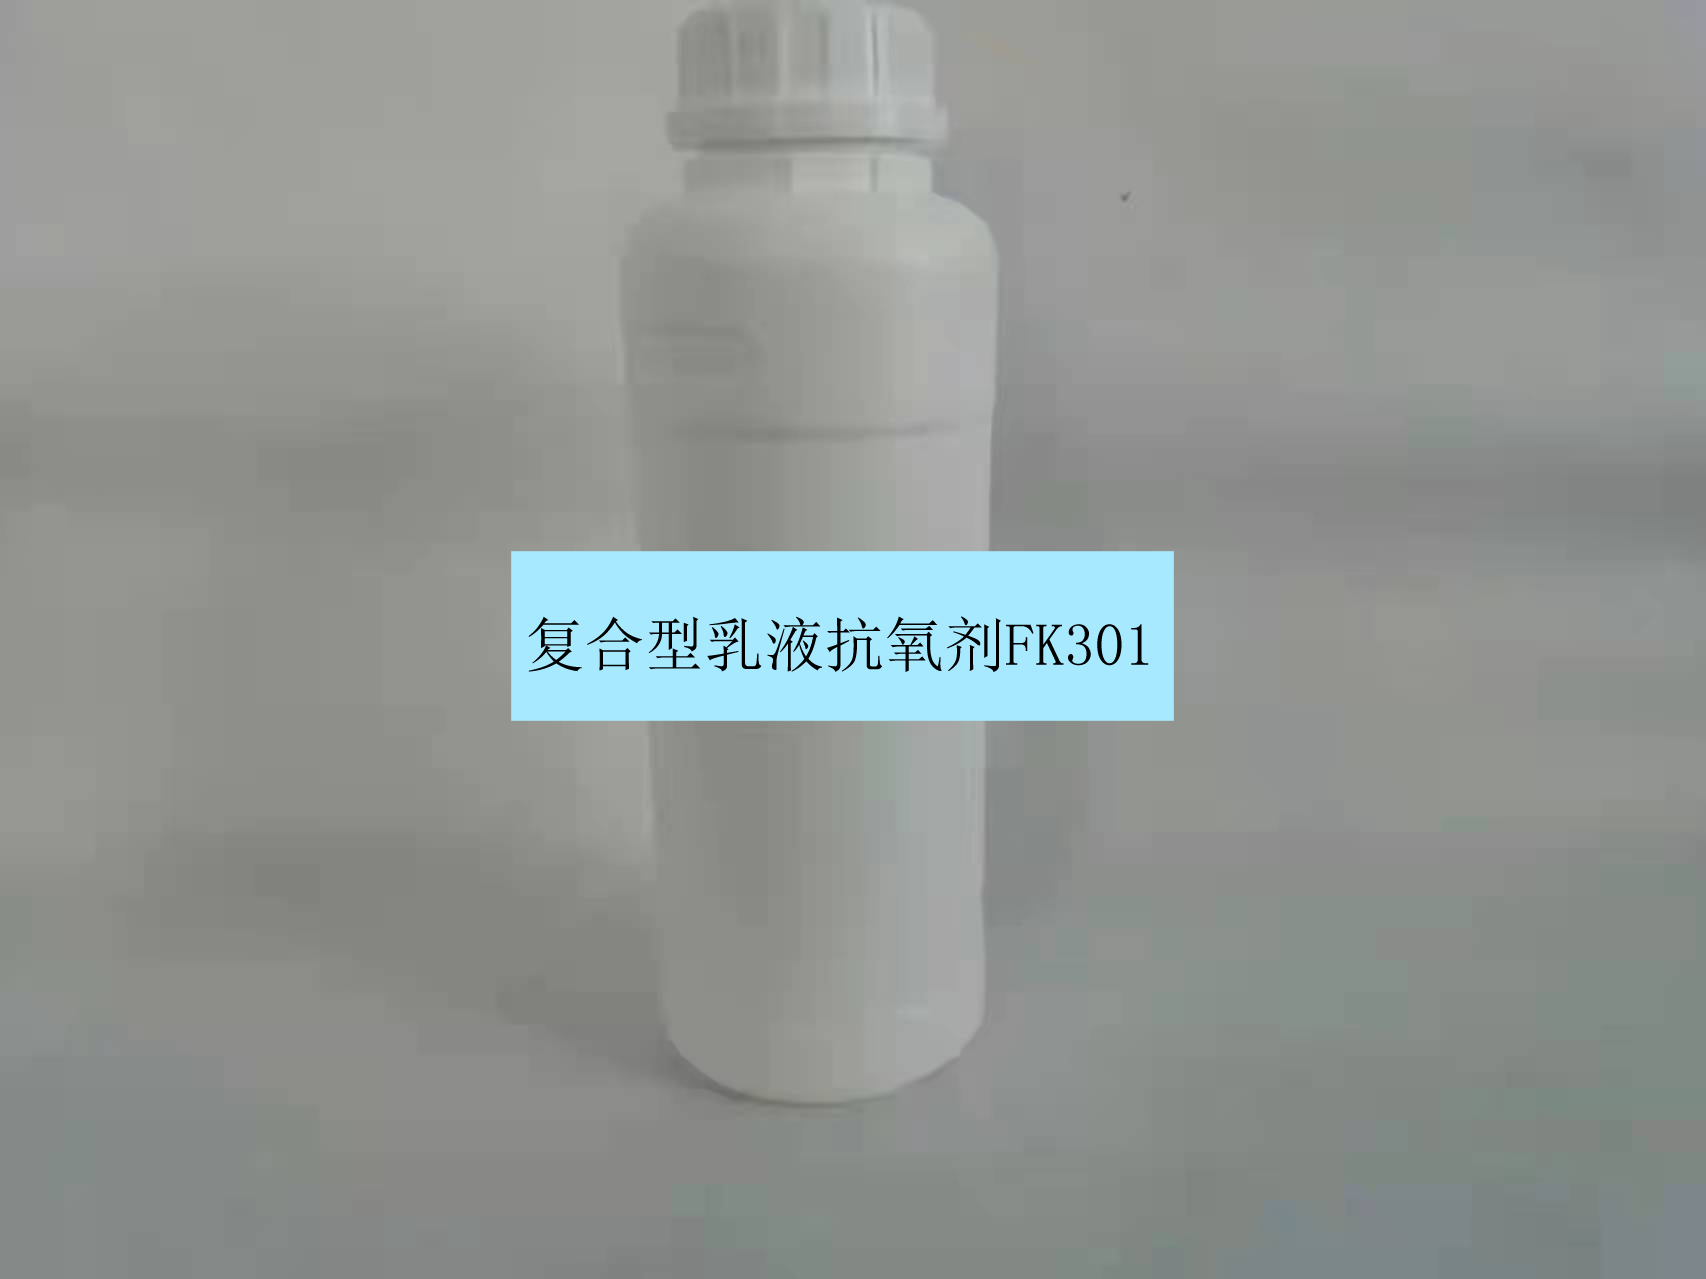 济南复合型乳液抗氧剂FK301替代抗氧剂2246 不溶于水和油中 无污染